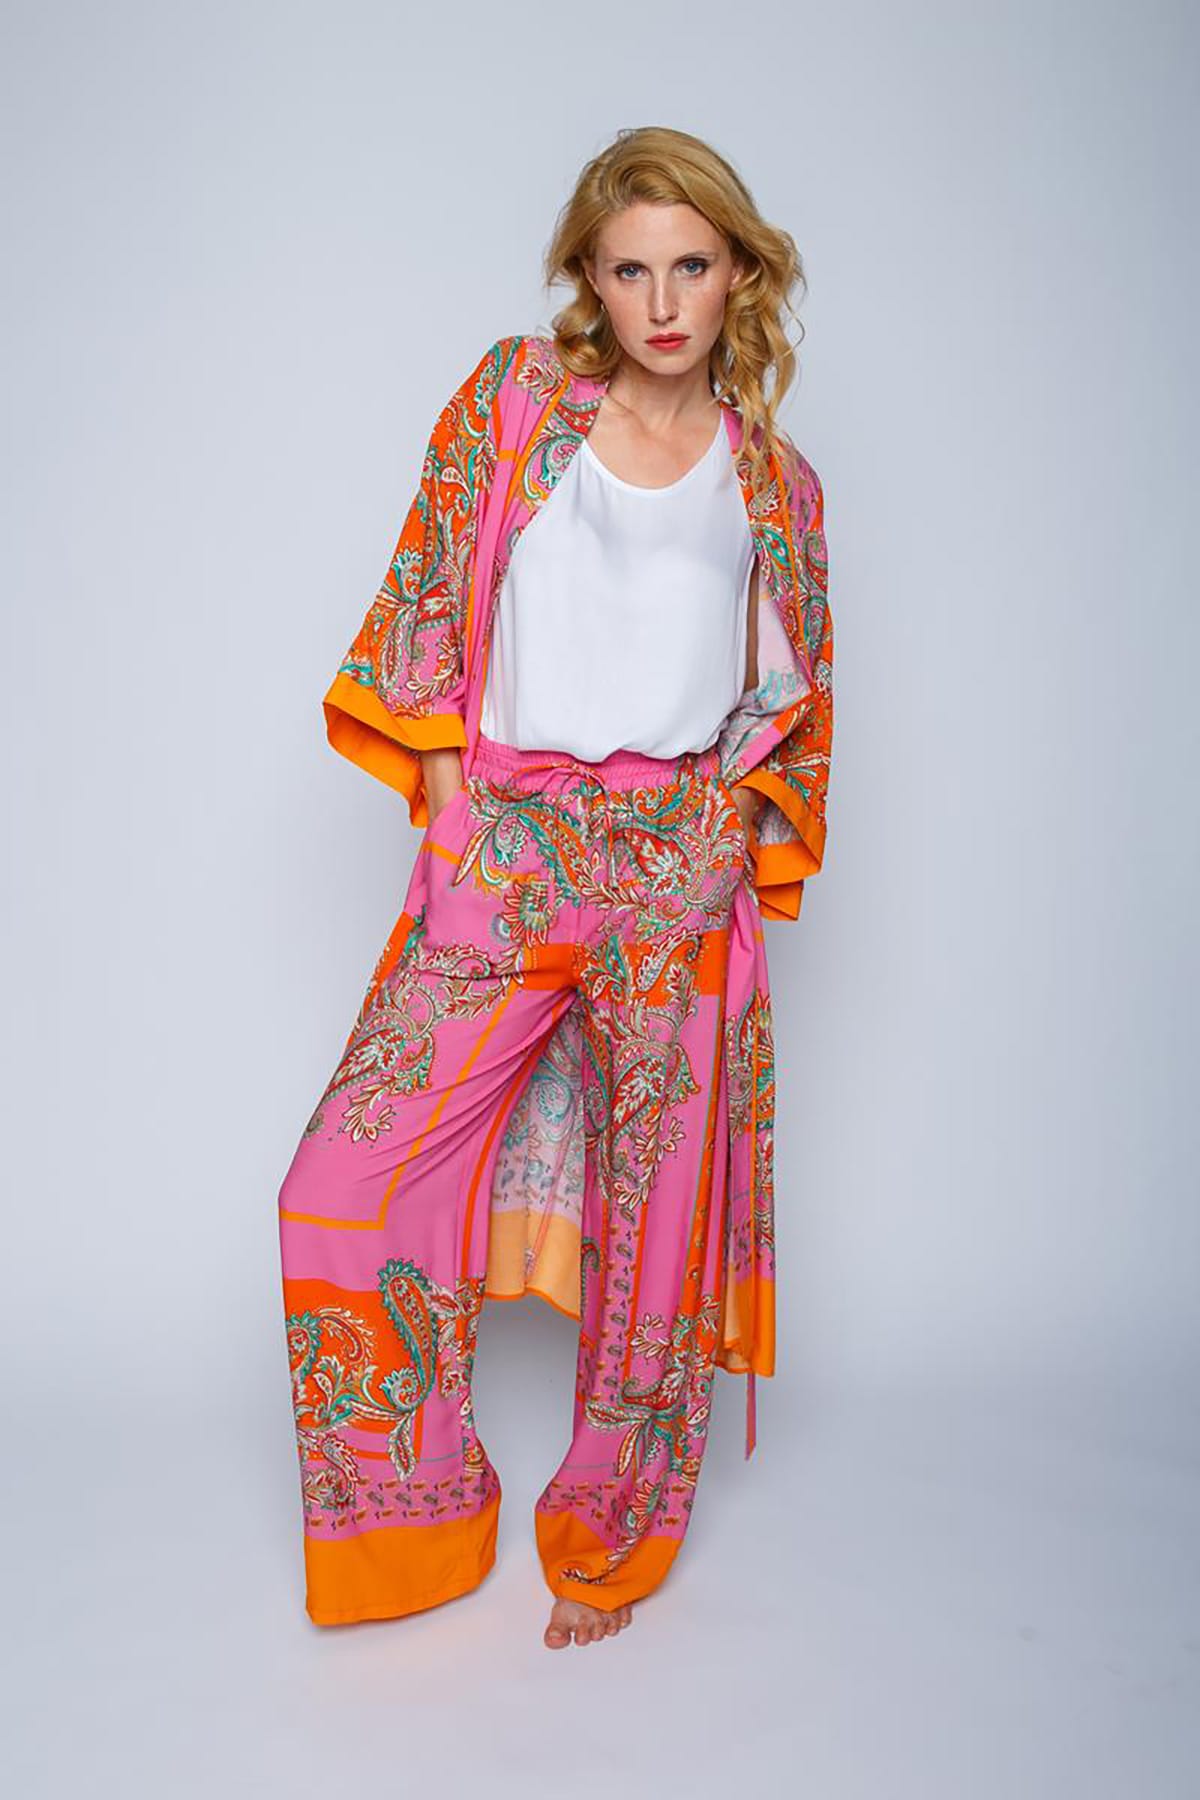 Coole Sommerhose mit elastischem Bund und Paisley Print pink orange scarf Hose Emily van den Bergh 